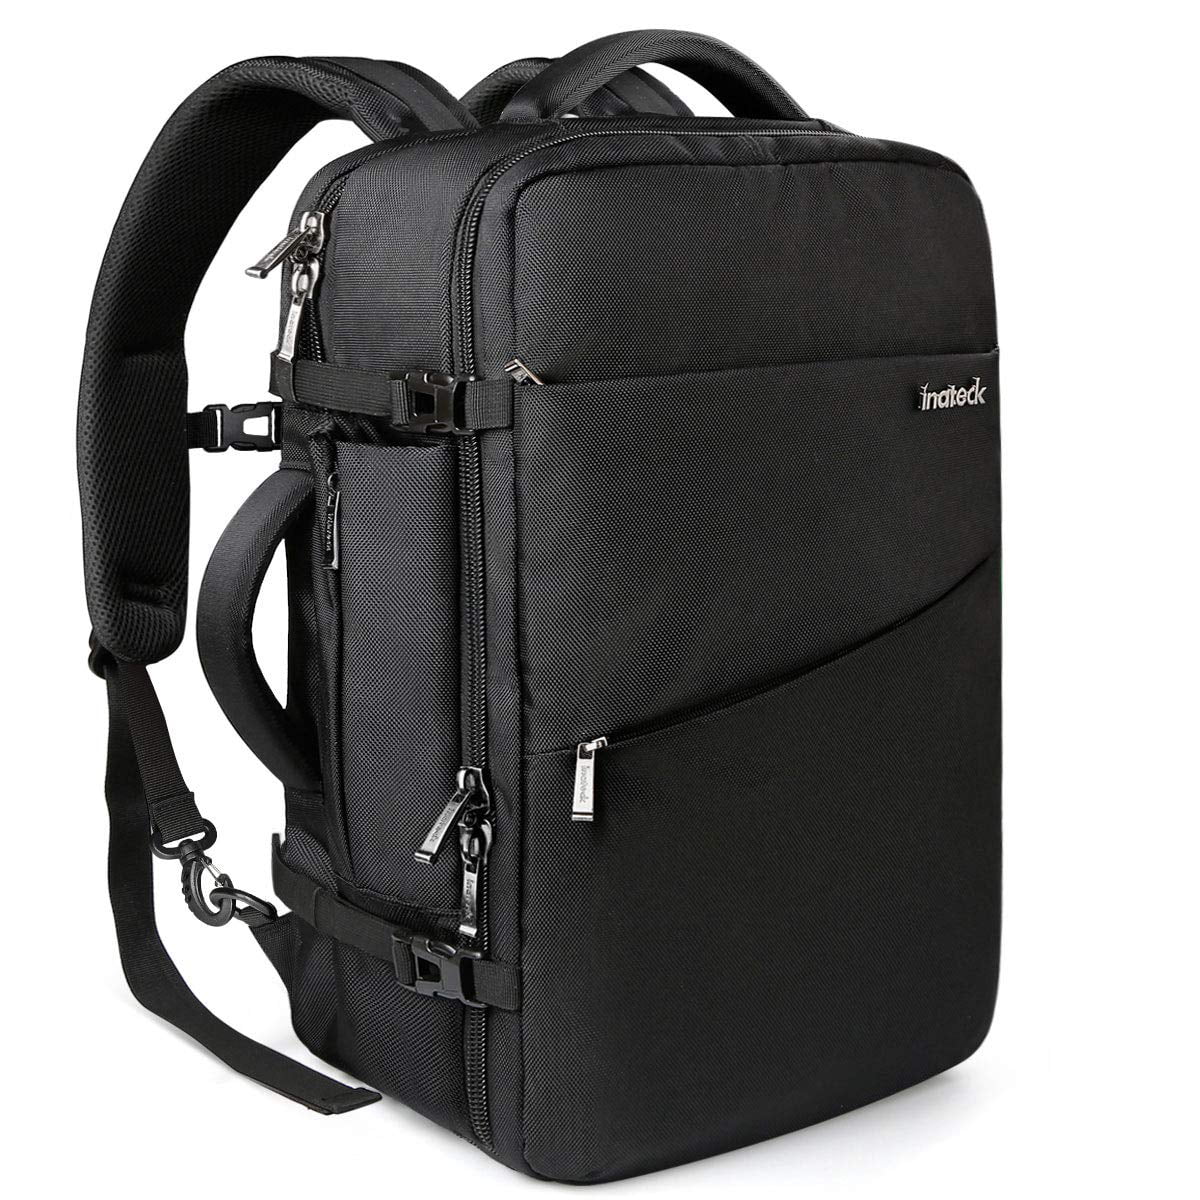 KAKA Travel Backpack for Men Women,40L Carry On Flight Approved Weekender Bag